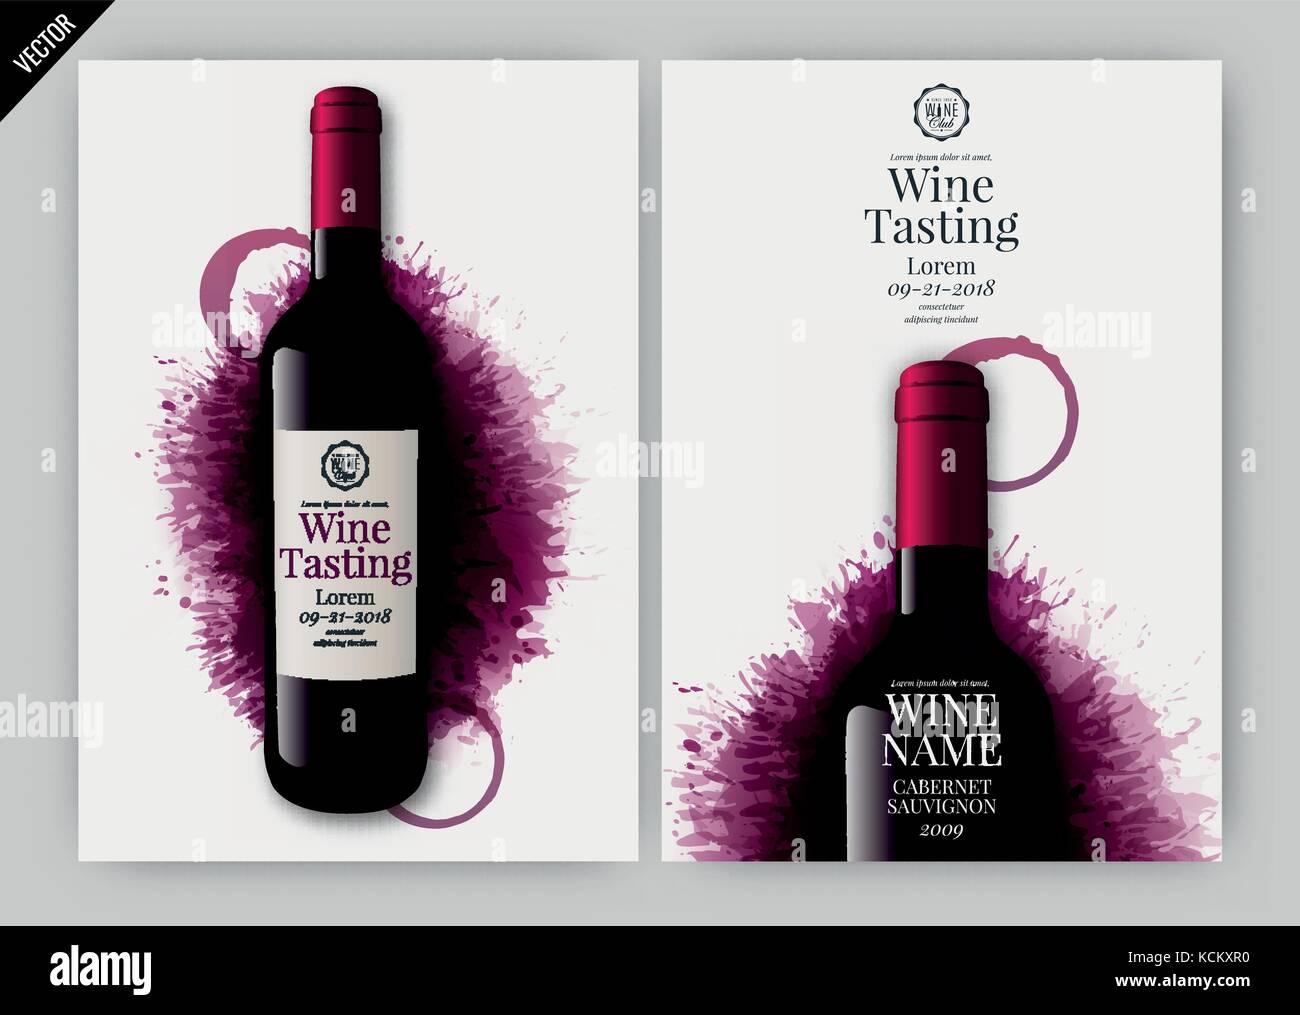 Idee für Wein Design, Produktpräsentation oder Weinprobe. Design Elemente durch die Schichten getrennt. Vector Illustration Stock Vektor